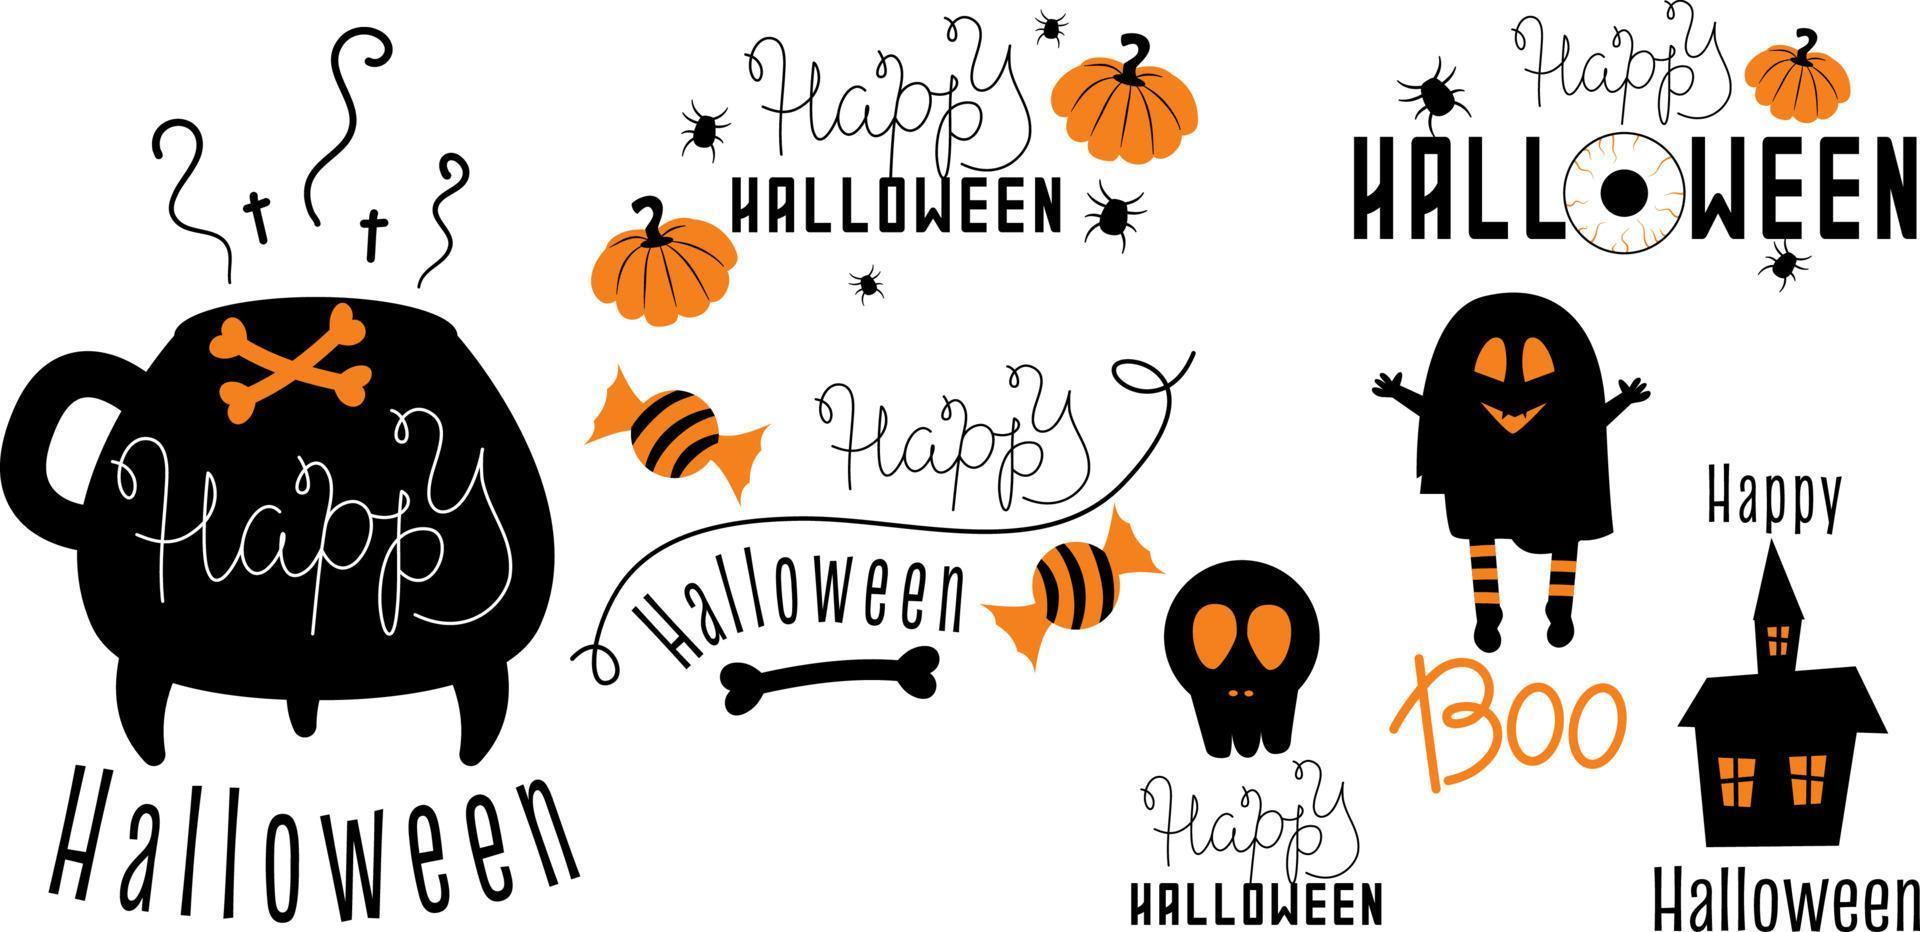 zwart en oranje set voor halloween. prints voor afdrukken met tekst, pompoenen en spinnen. vectorillustratie in een eenvoudige stijl, zwarte silhouetten decor halloween vakantie vector